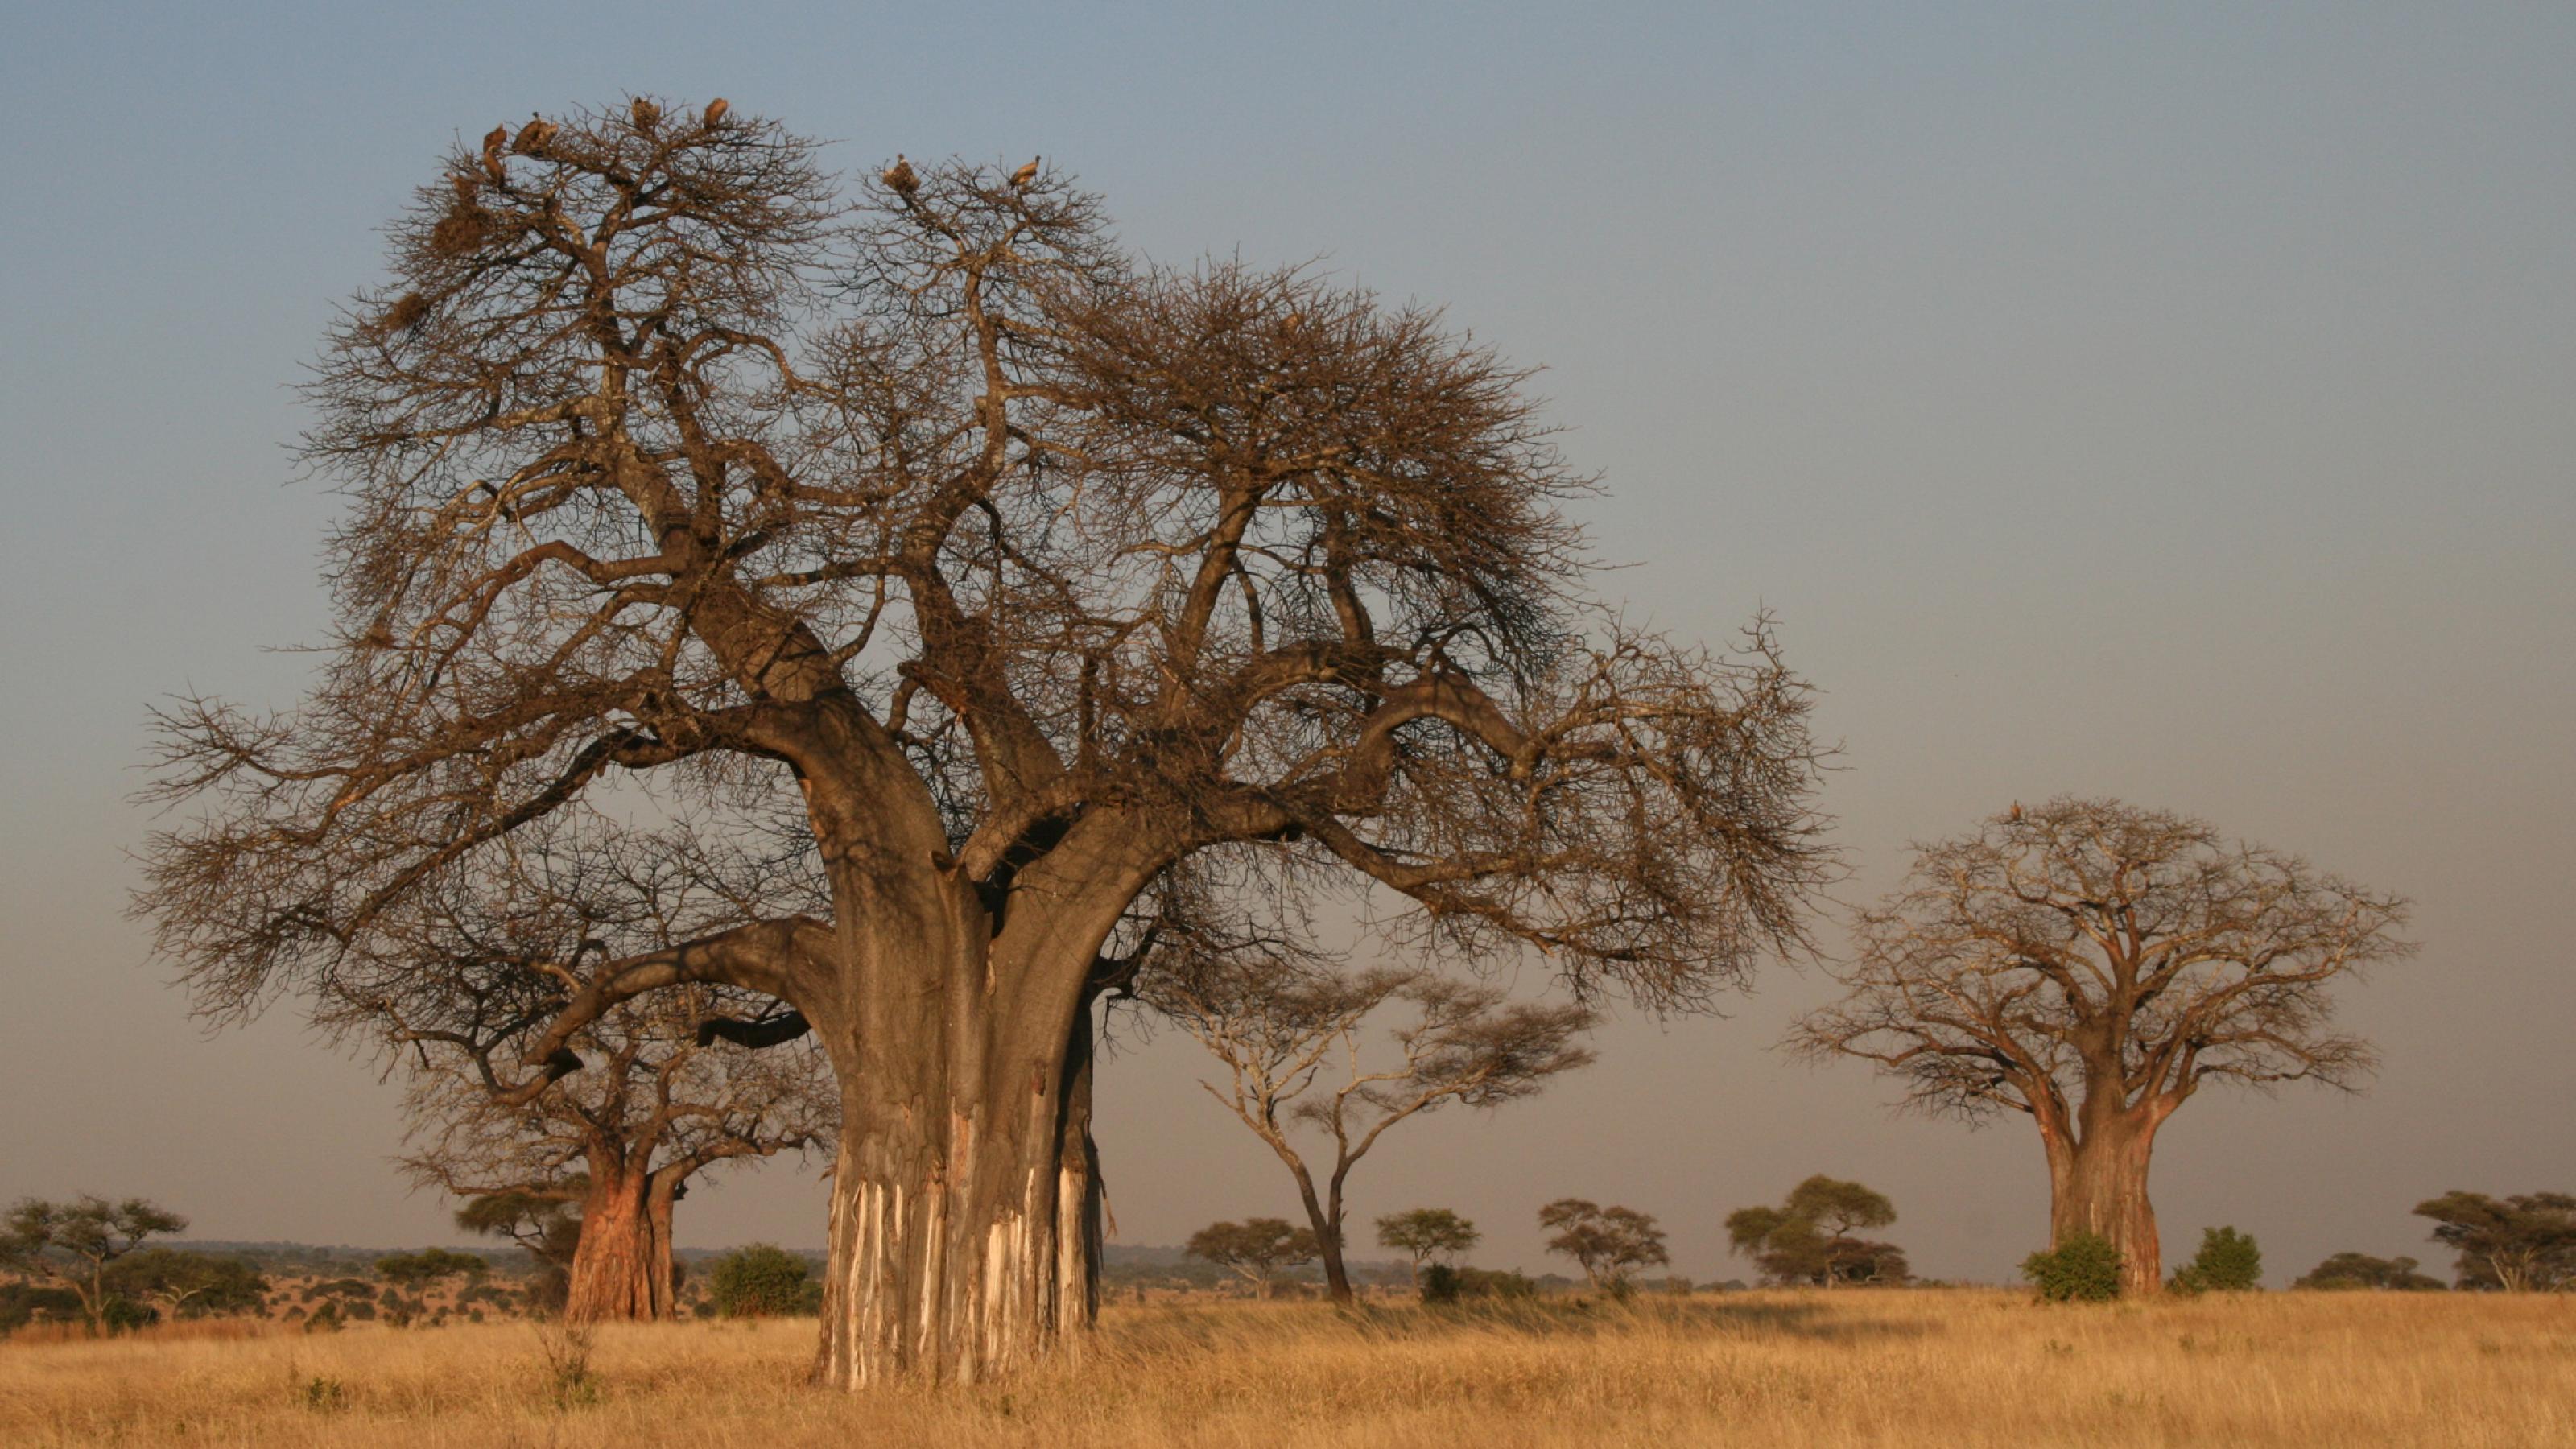 Das Foto zeigt die mächtigen Baobab-Bäume – auch Affenbrotbäume genannt – in der trockenen Savanne des Tarangire-Nationalparks in Tansansia. In einer ähnlichen Umgebung lebte vor gut zwei Millionen Jahre die Vormenschen-Art Australopithecus.